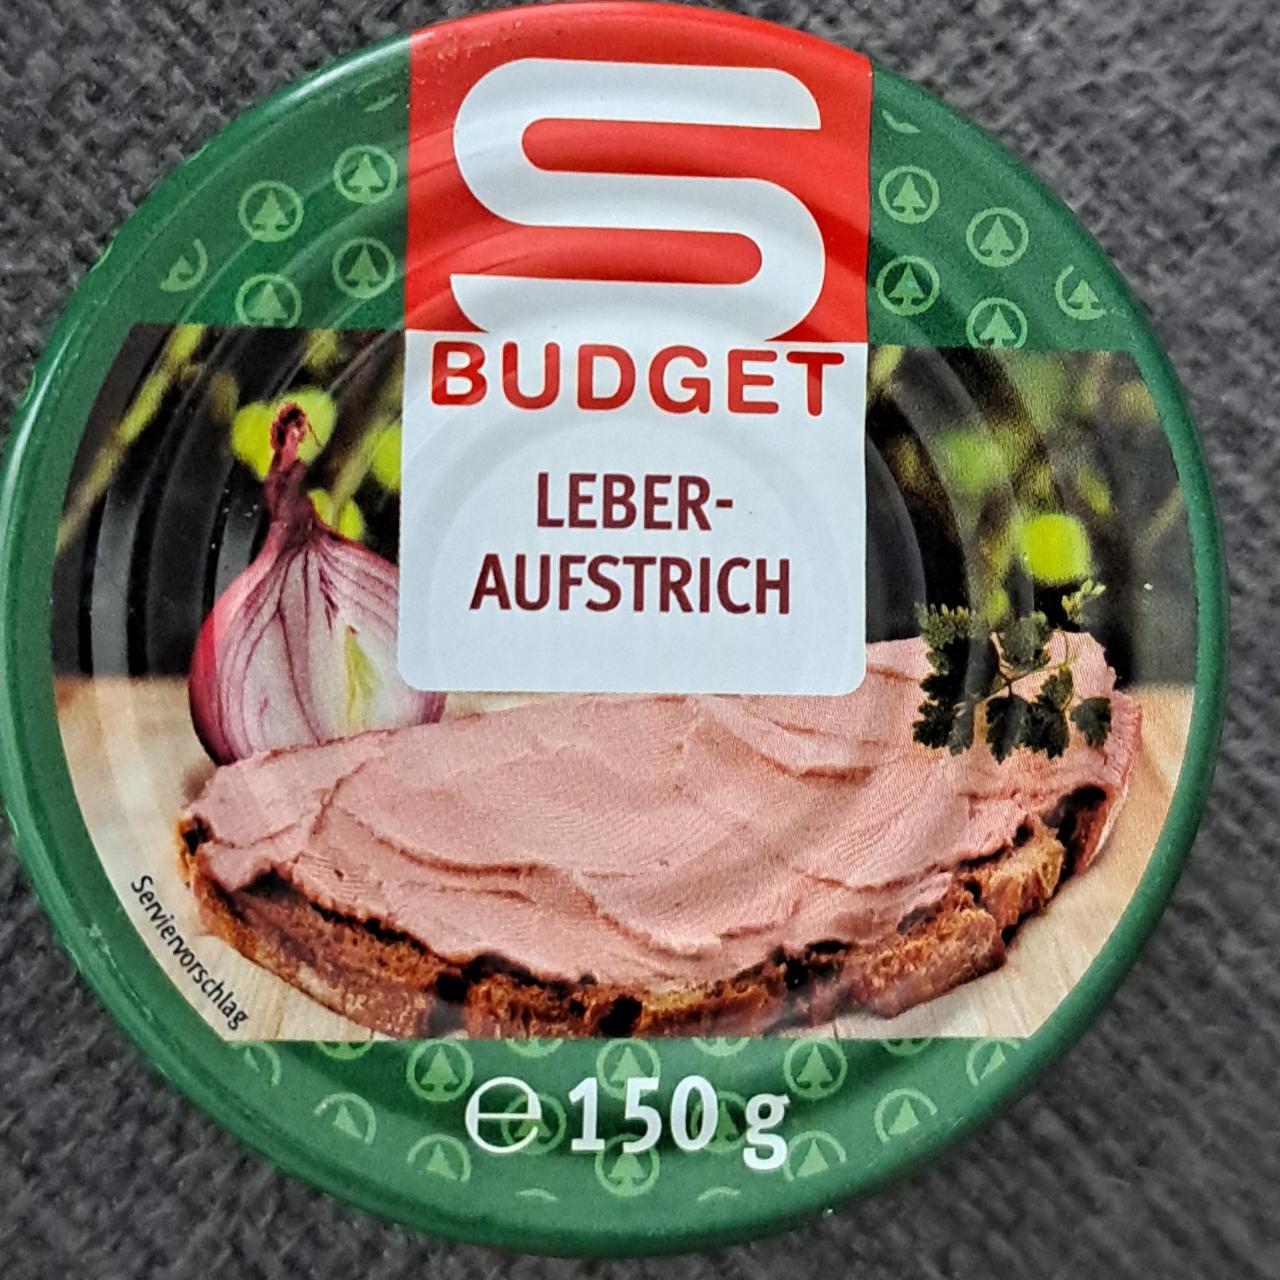 Fotografie - Leber-Aufstrich S Budget